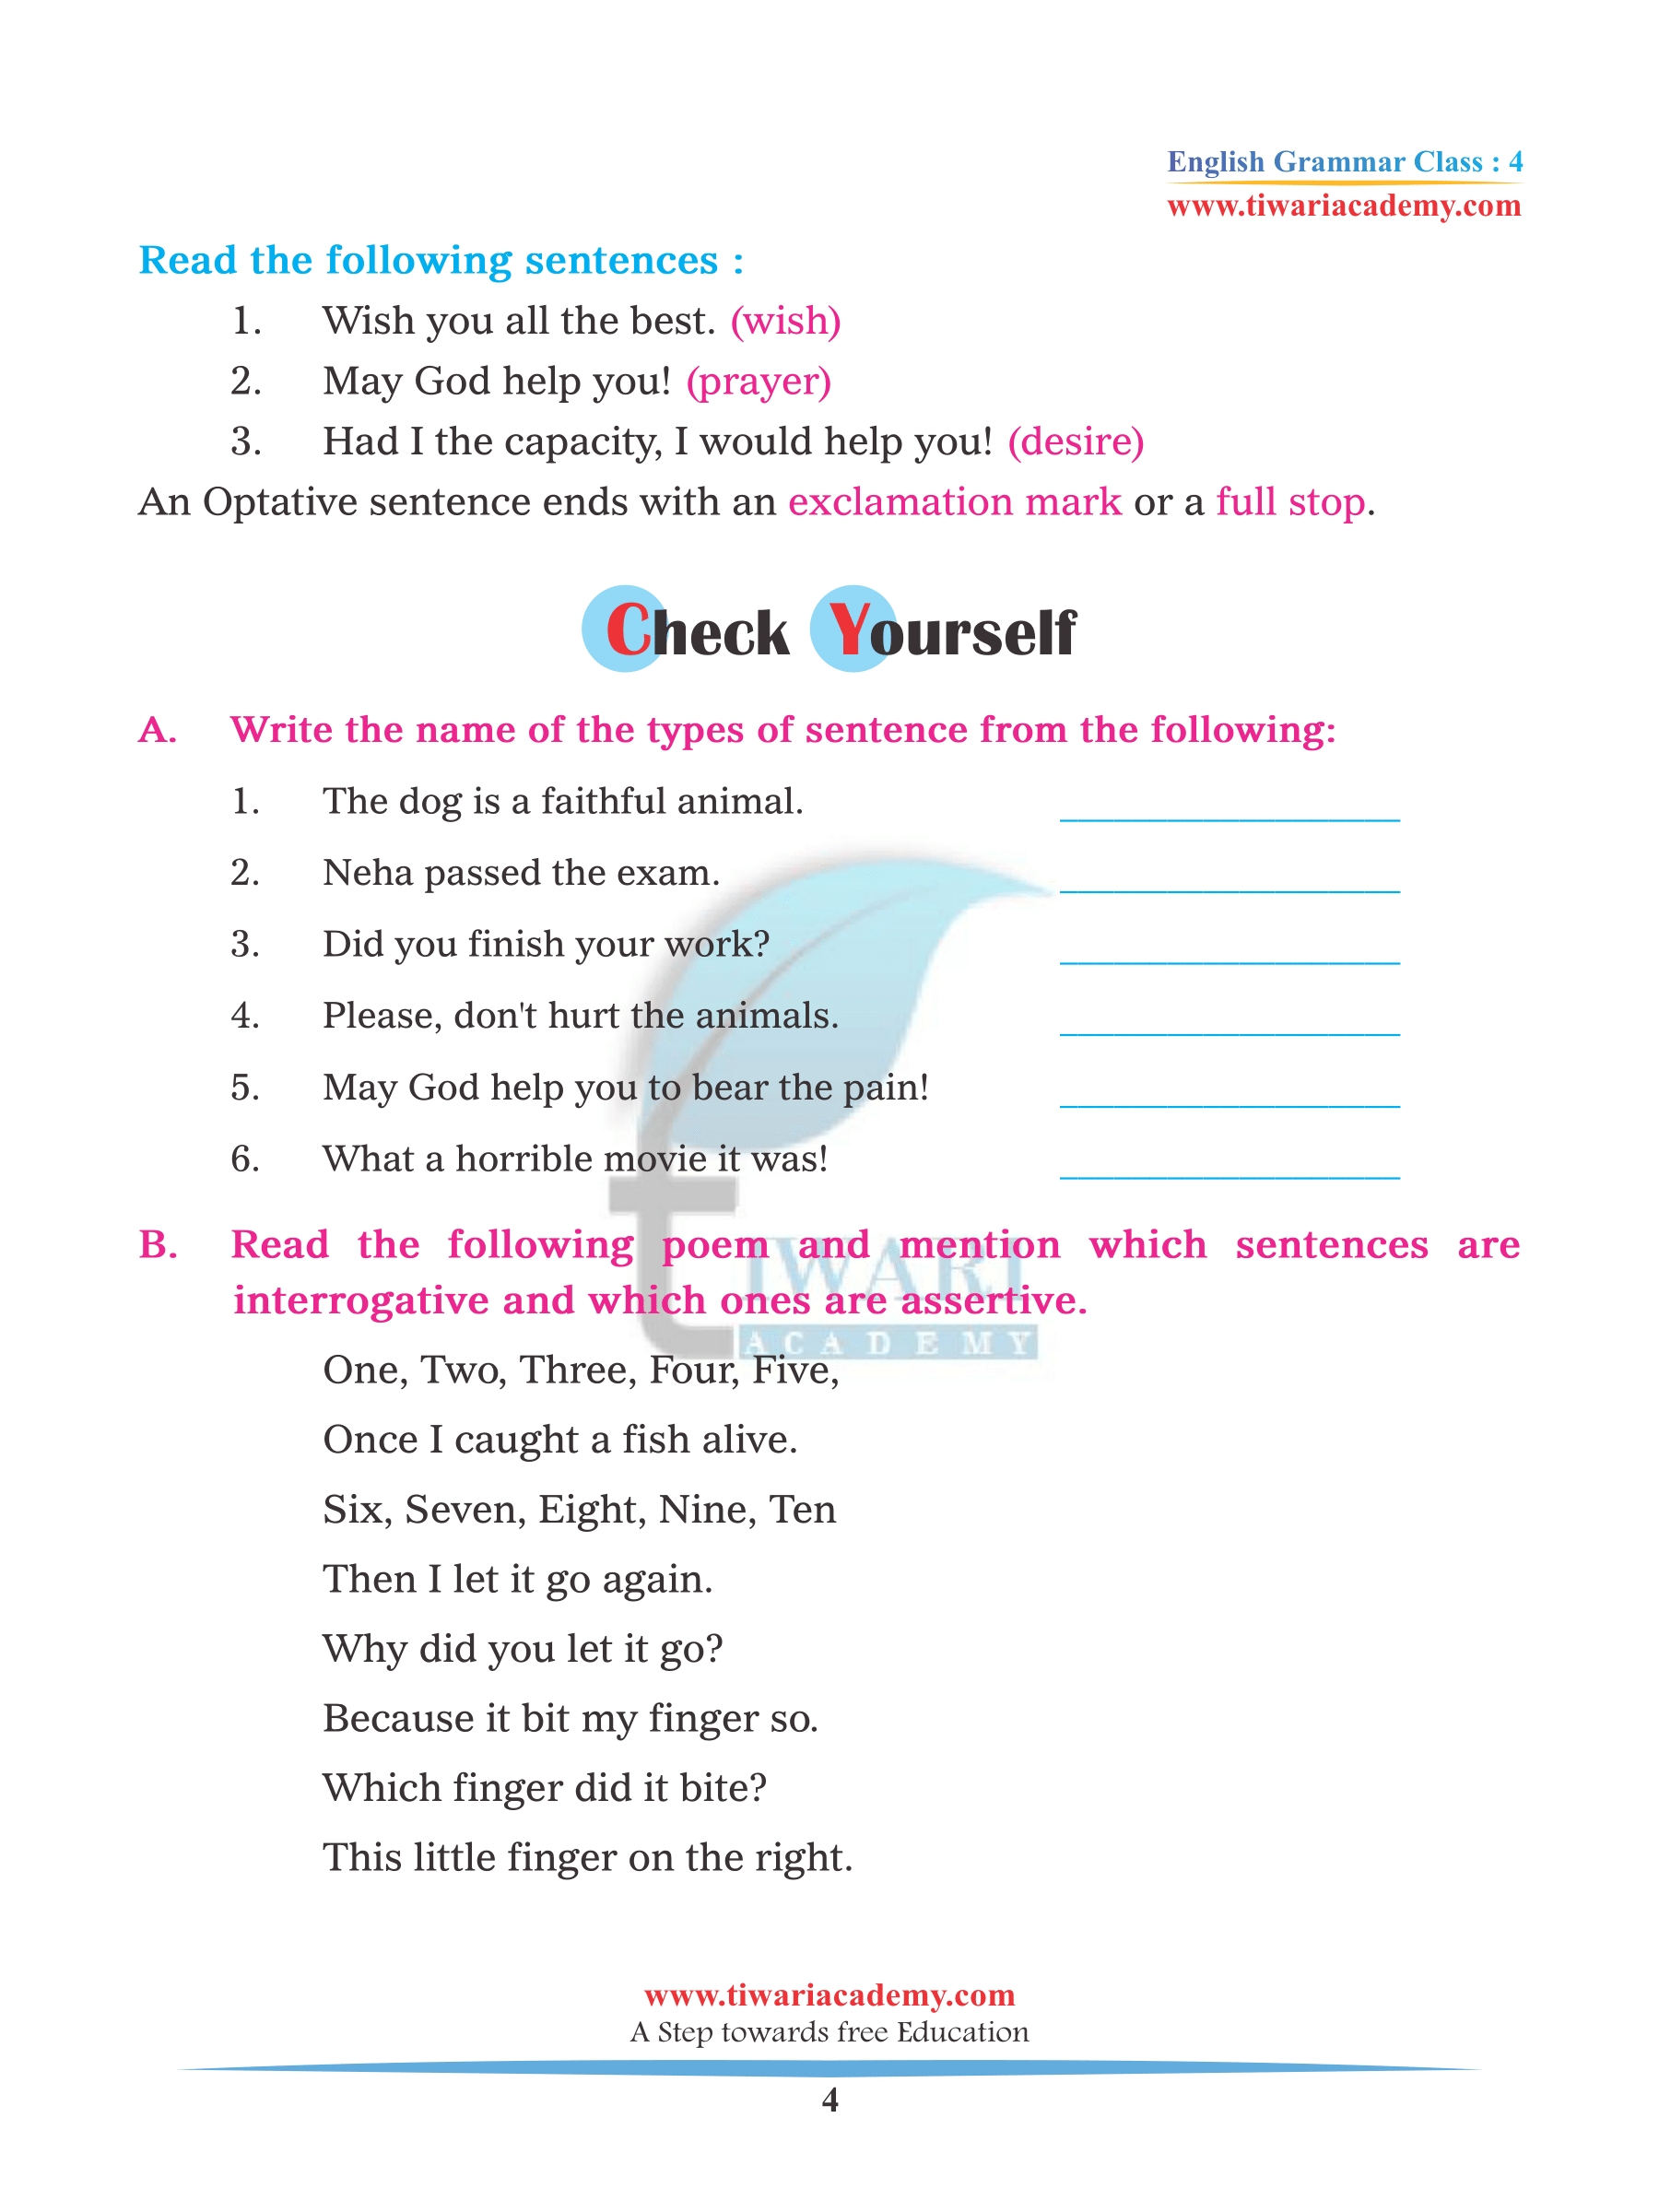 CBSE Class 4 English Grammar Chapter 3 Kinds of Sentence assignments